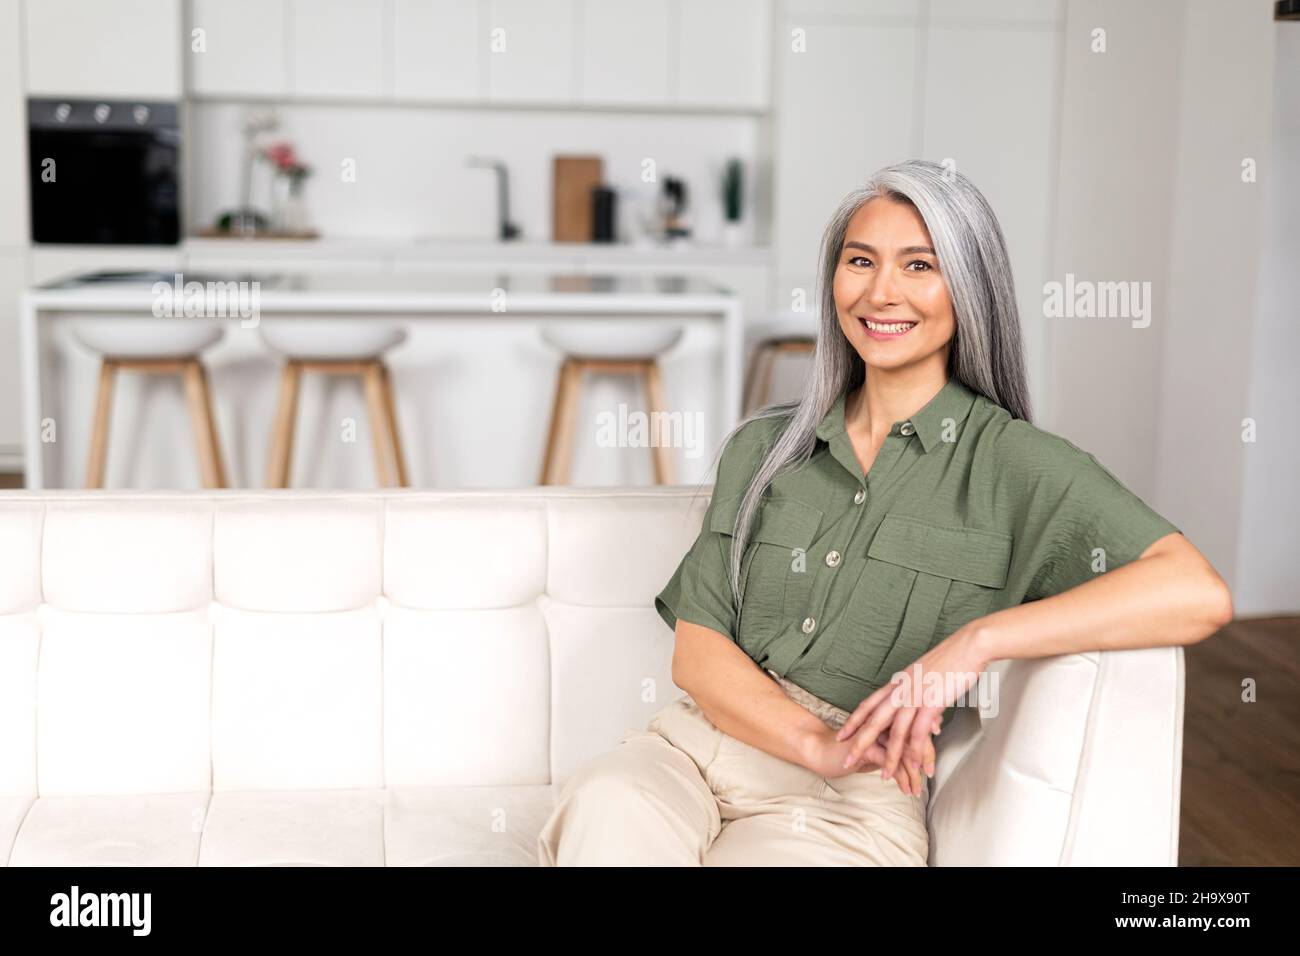 Porträt einer attraktiven Frau mittleren Alters mit langen silbernen Haaren, die in einer modernen Wohnung sitzt, einer mehrrassischen asiatischen Frau mittleren Alters, die zu Hause ruht, die Kamera anschaut und mit einem breiten, toothy Lächeln lächelt Stockfoto